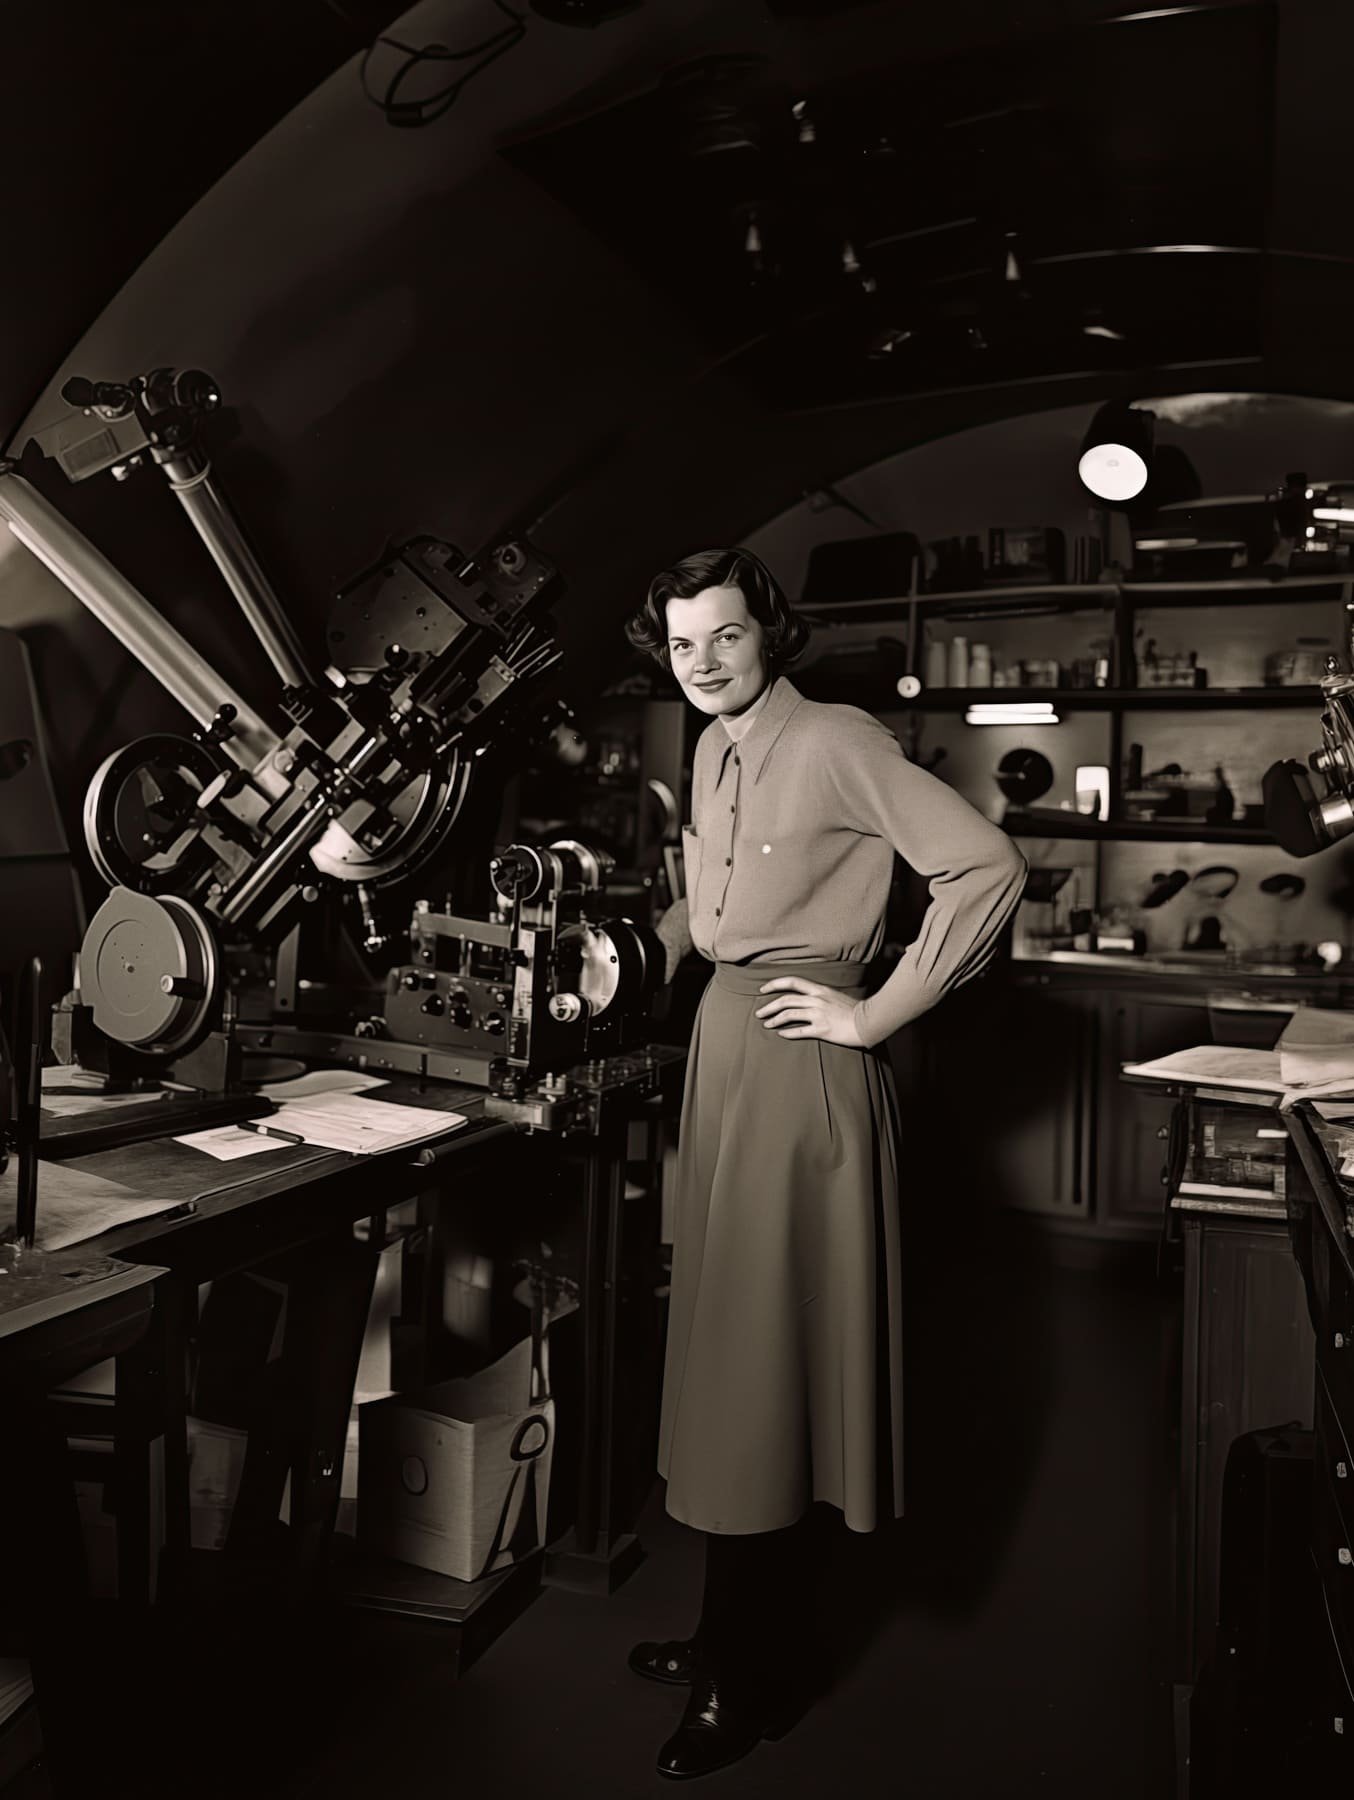 Frau im langen Rock steht an einer Art Teleskop, Bild im Stil eines historischen schwarz-weiß-Fotos